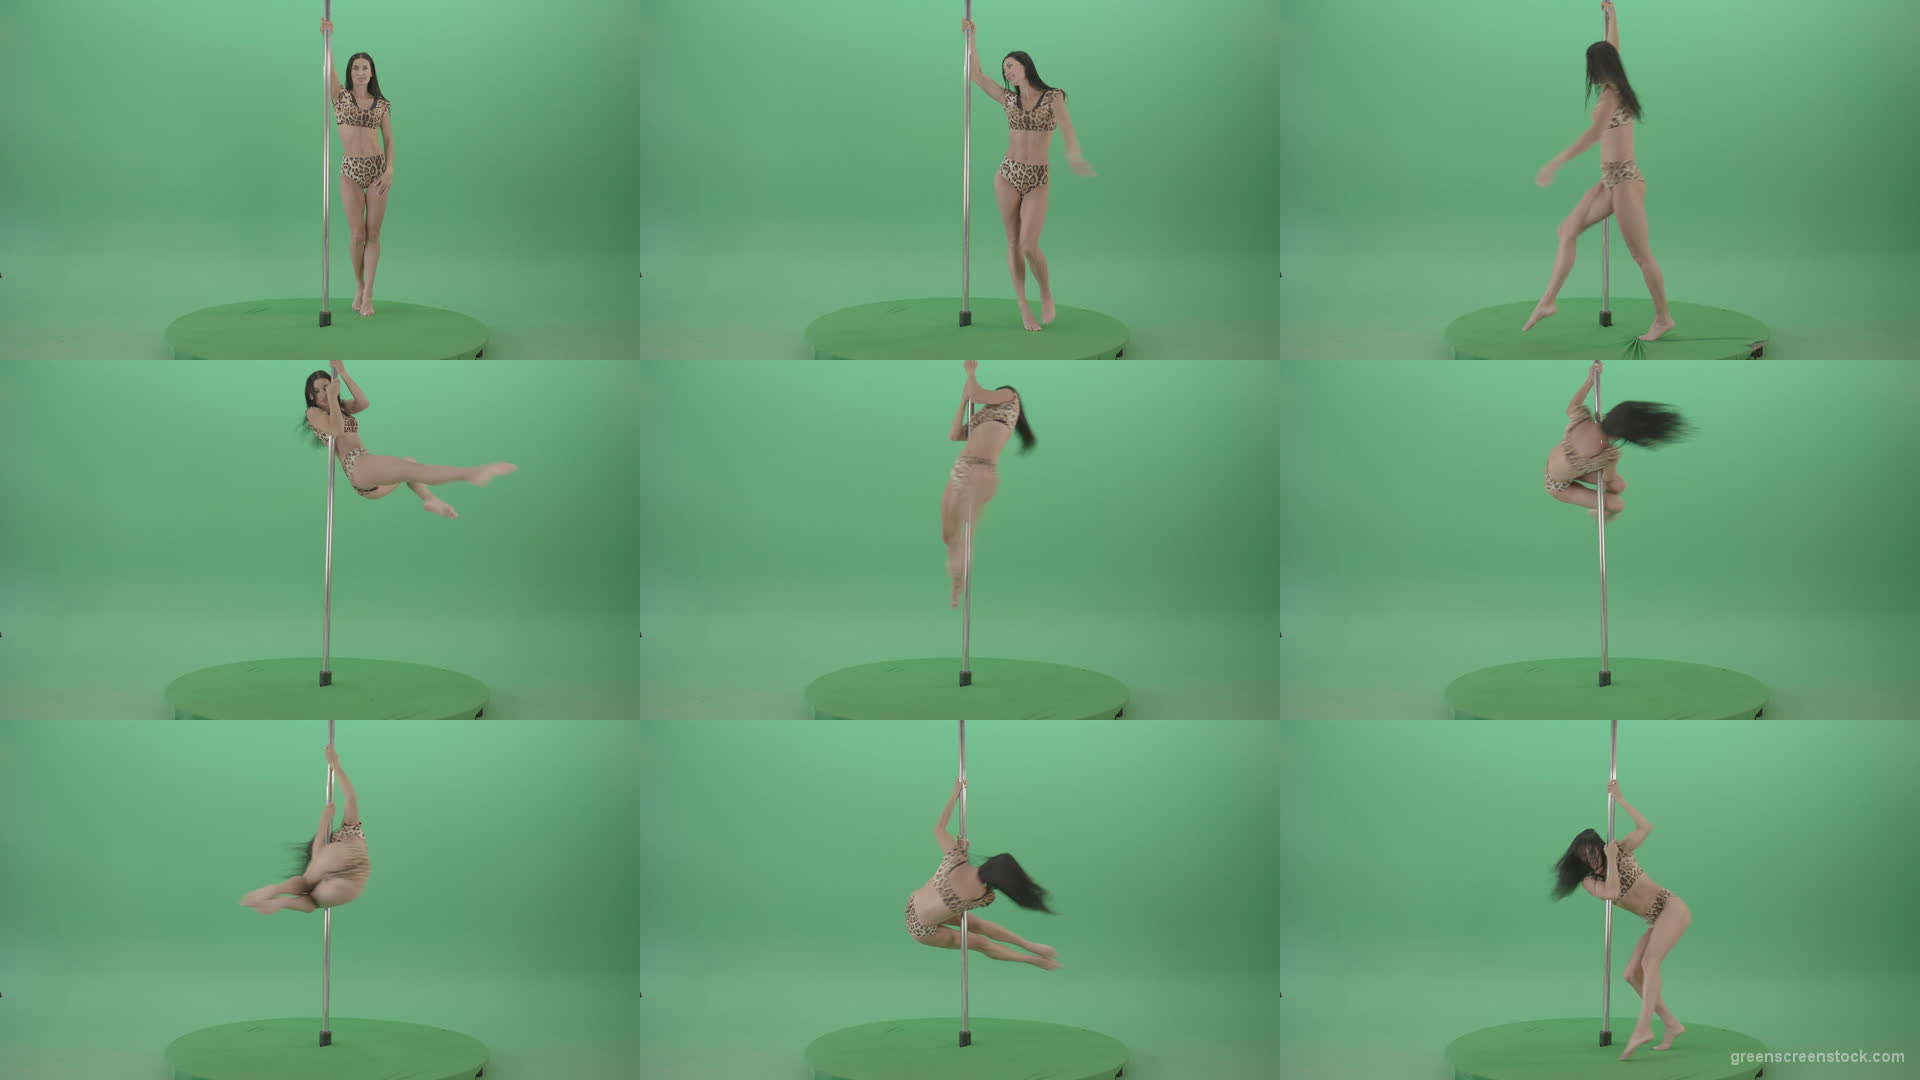 Stripteas-Girl-in-leopard-skin-wear-spinning-on-pilon-dancing-pole-isolated-on-Green-Screen-4K-Video-Footage-1920 Green Screen Stock